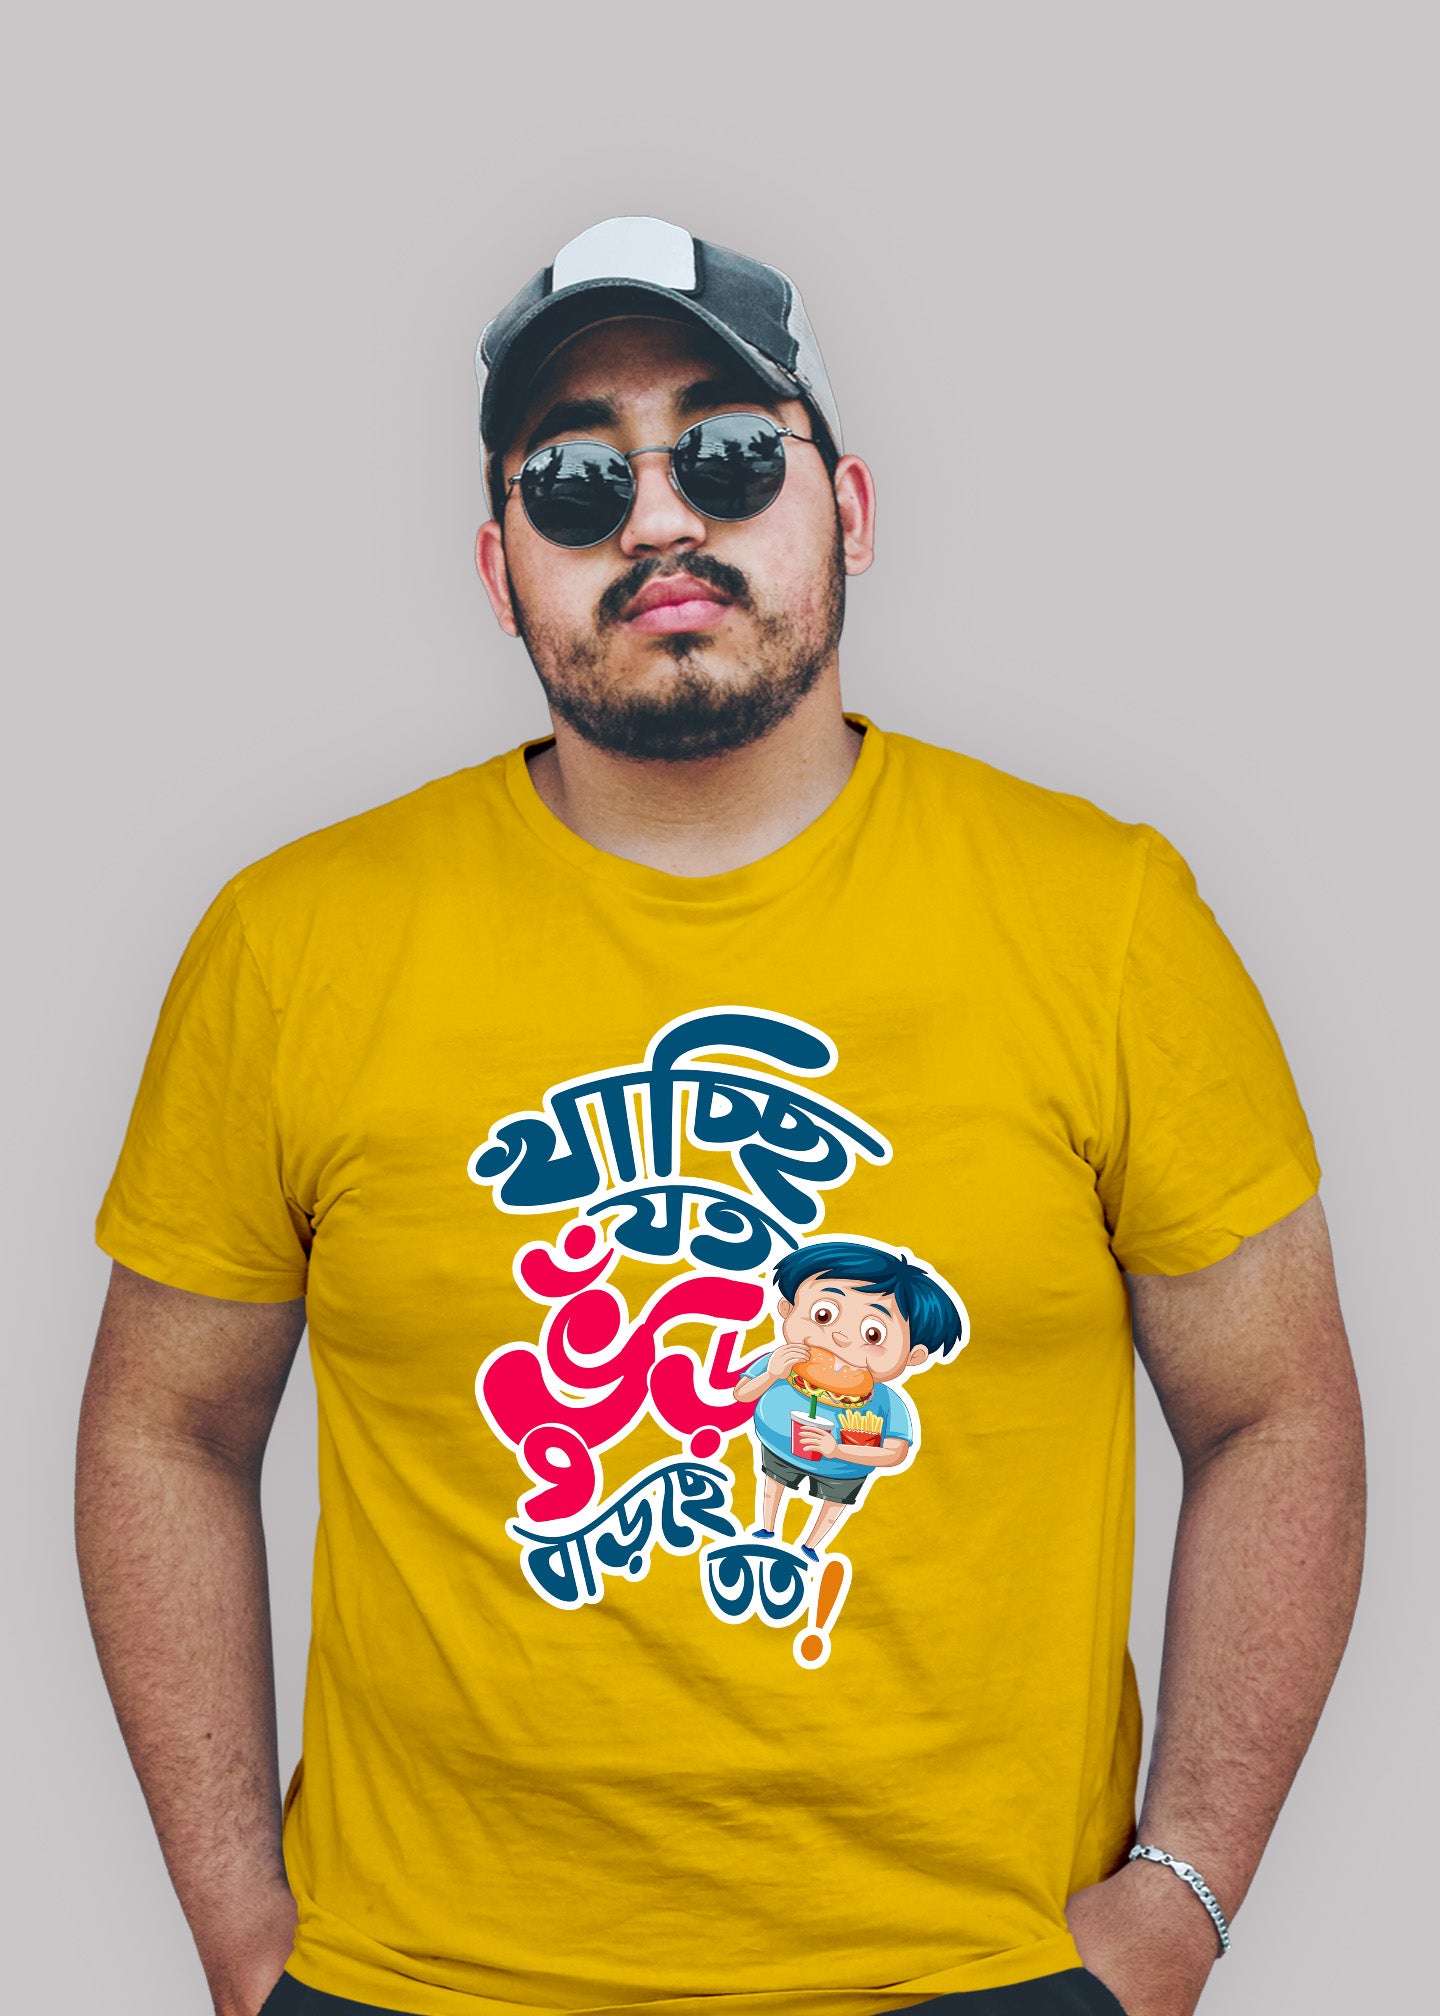 Khachi jato bhuri barche tato bengali Printed Half Sleeve Premium Cotton T-shirt For Men